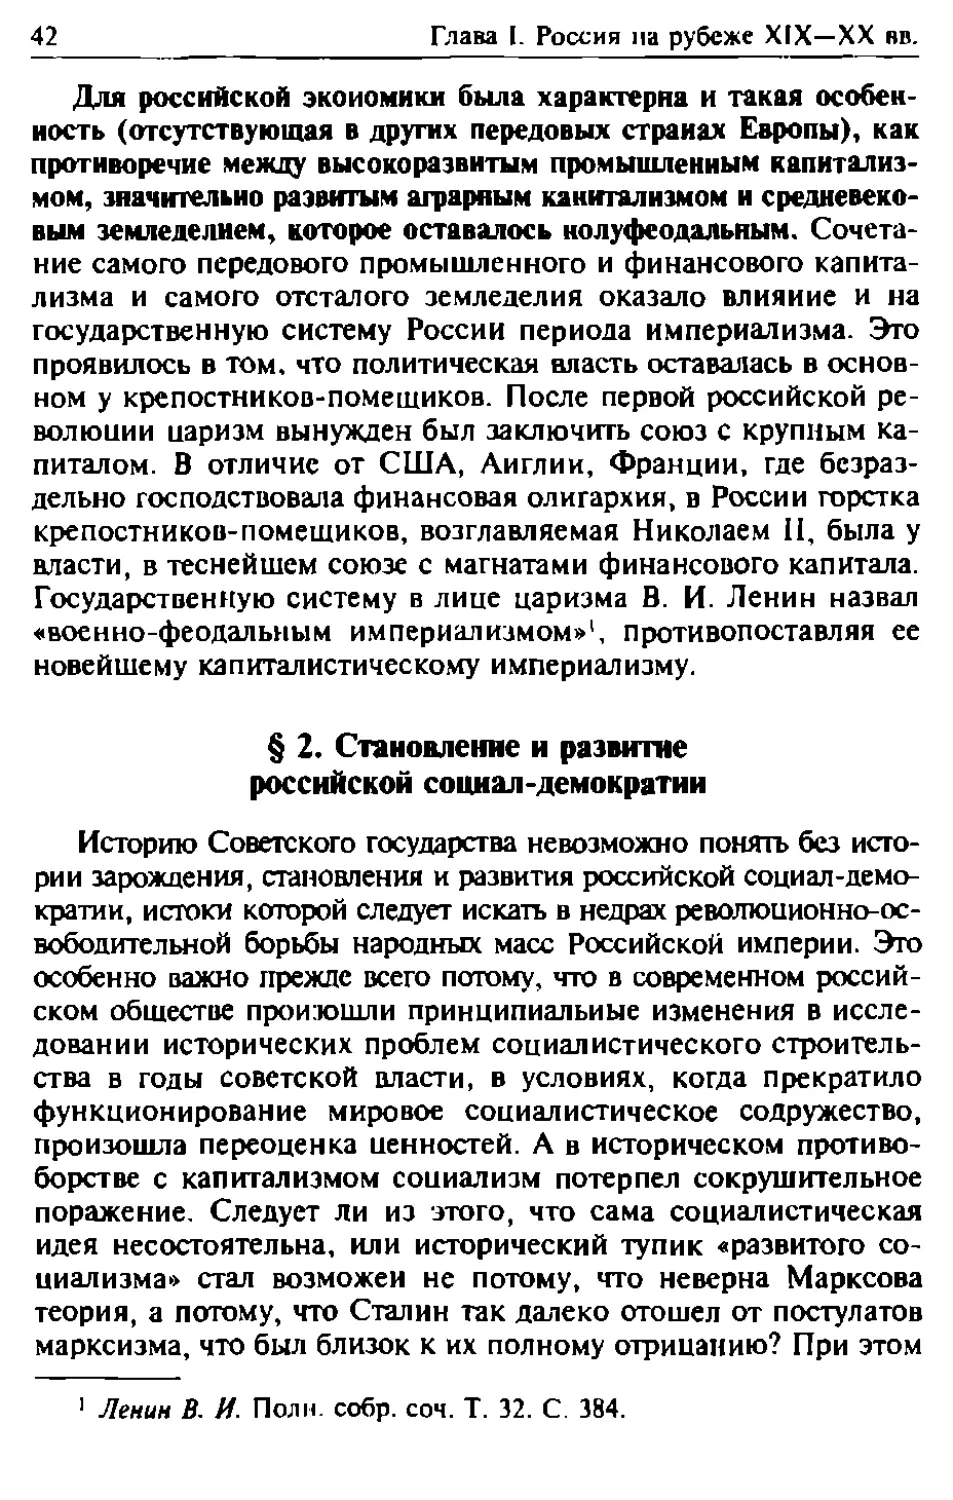 § 2. Становление и развитие российской социал-демократии